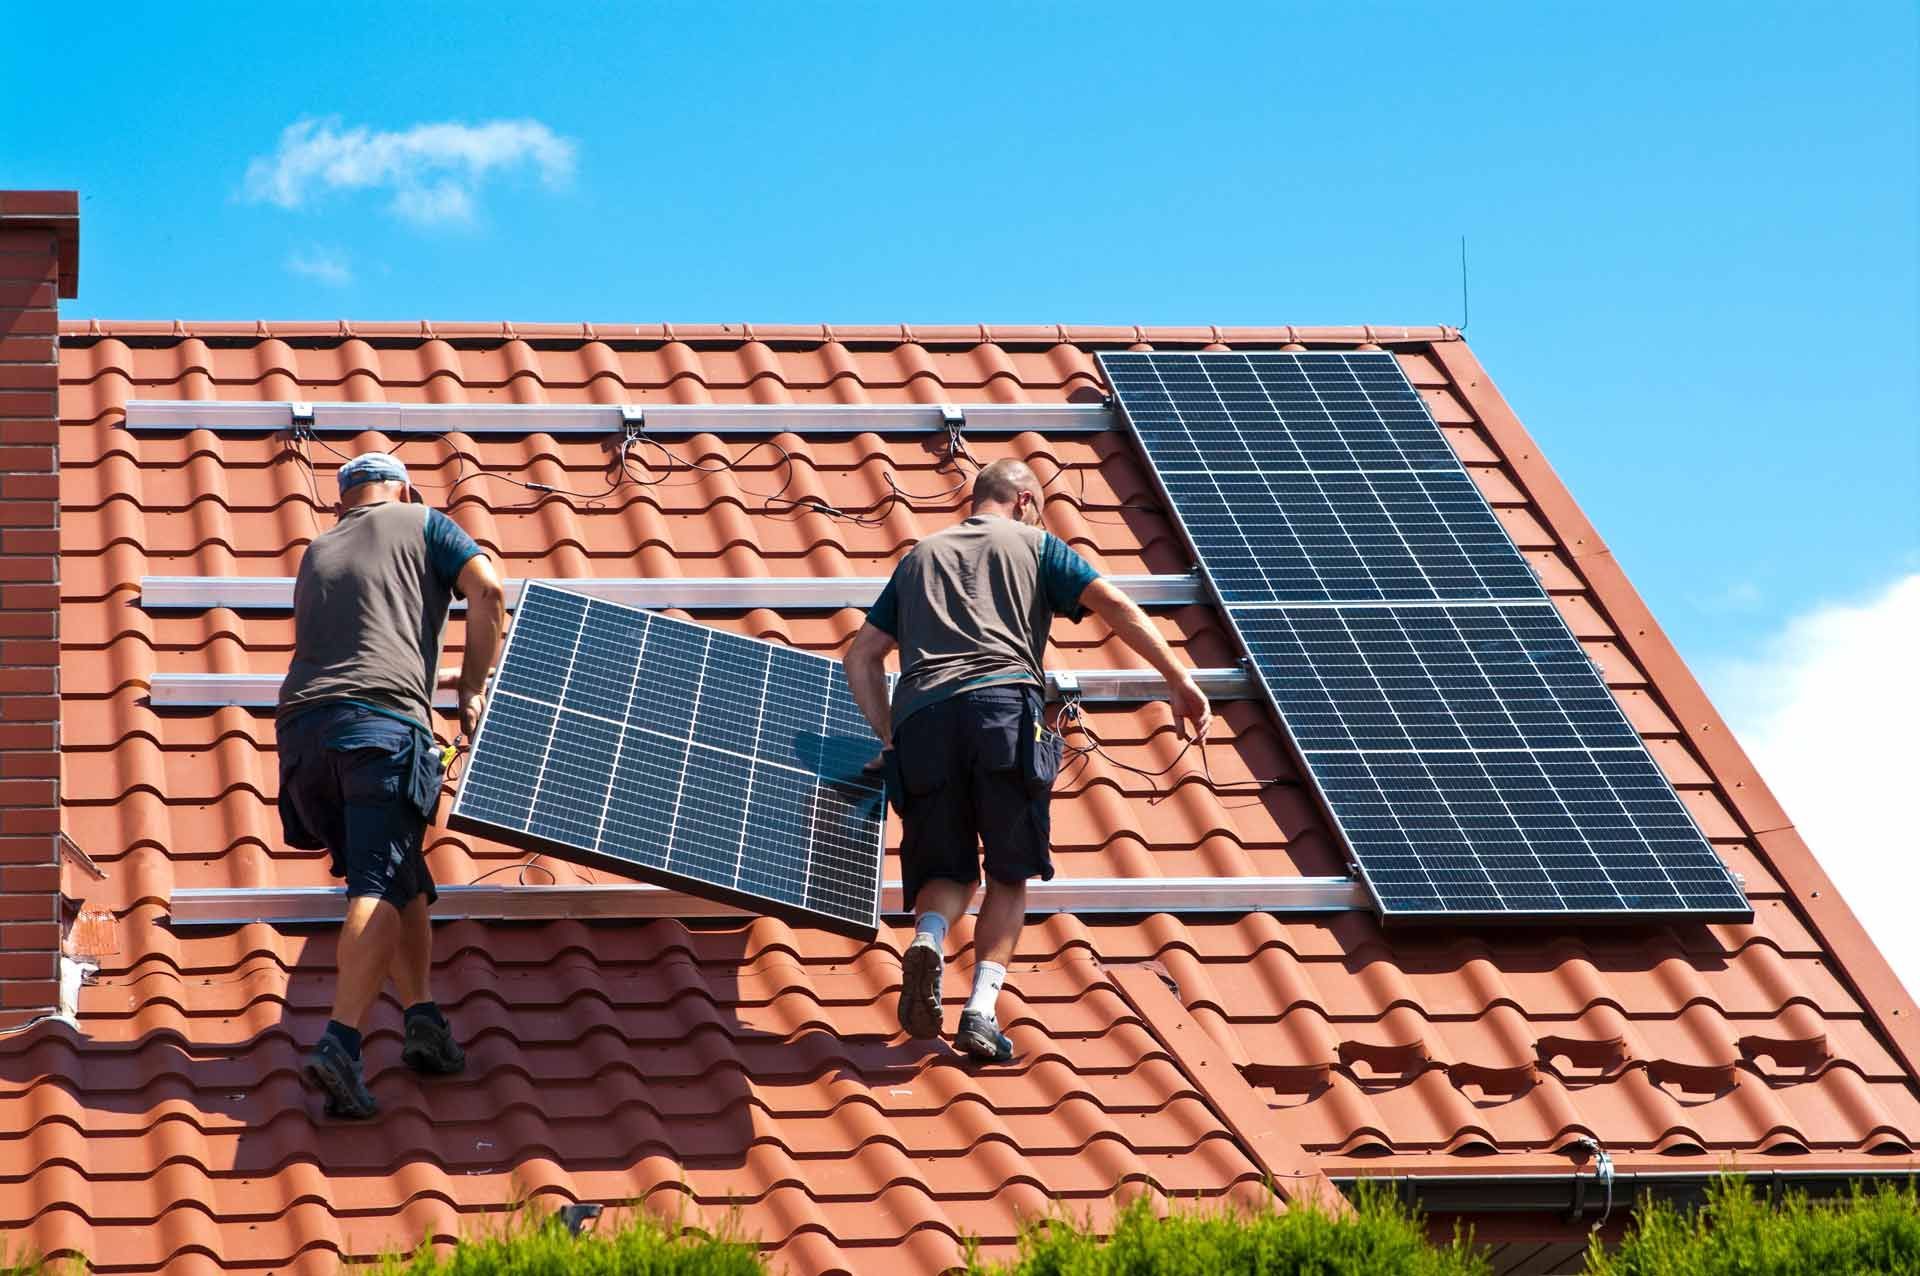 La pose de panneaux photovoltaïque par deux couvreurs sur le toit d’une maison